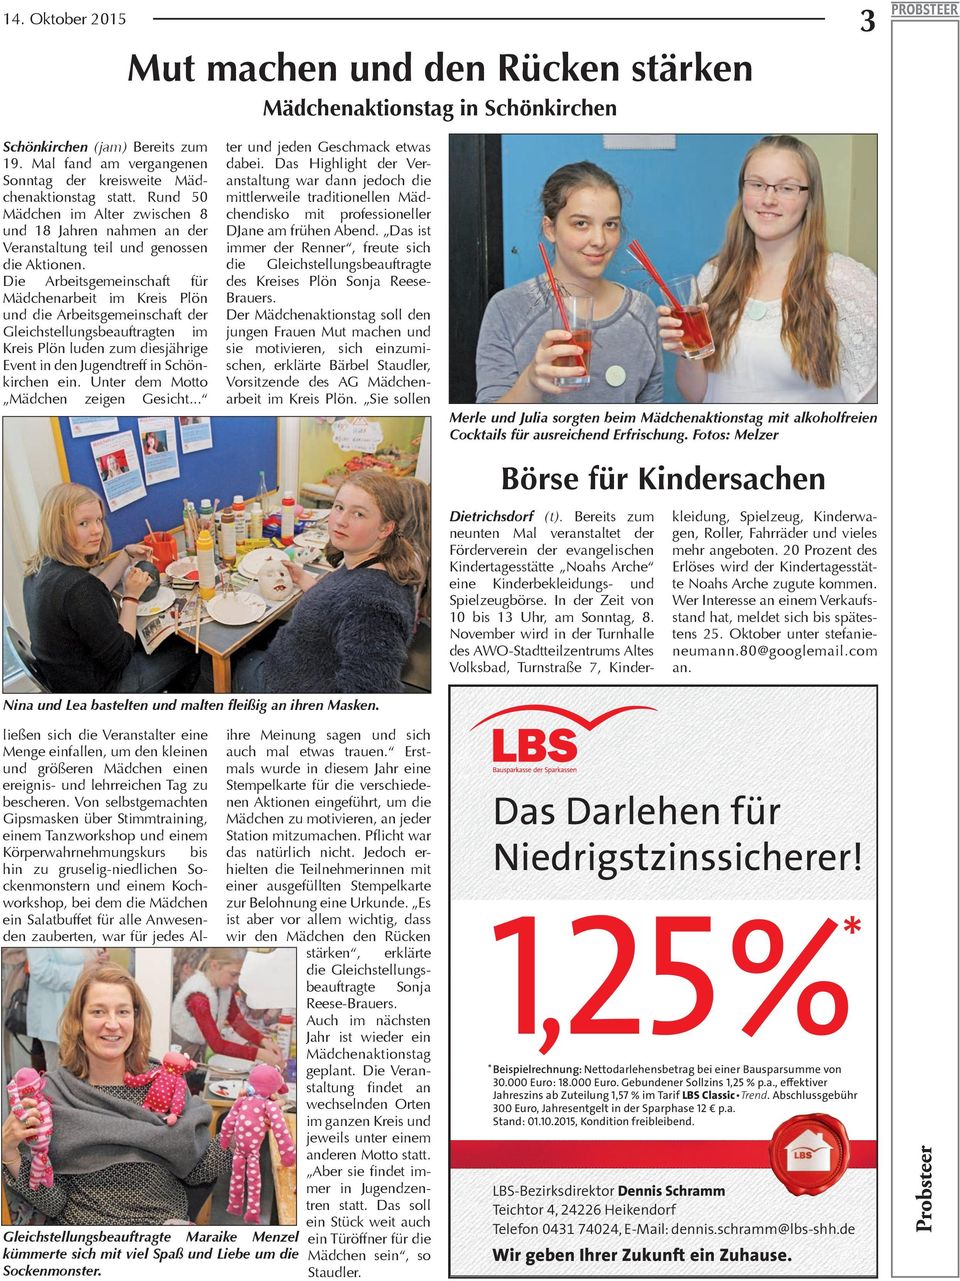 Die Arbeitsgemeinschaft für Mädchenarbeit im Kreis Plön und die Arbeitsgemeinschaft der Gleichstellungsbeauftragten im Kreis Plön luden zum diesjährige Event in den Jugendtreff in Schönkirchen ein.